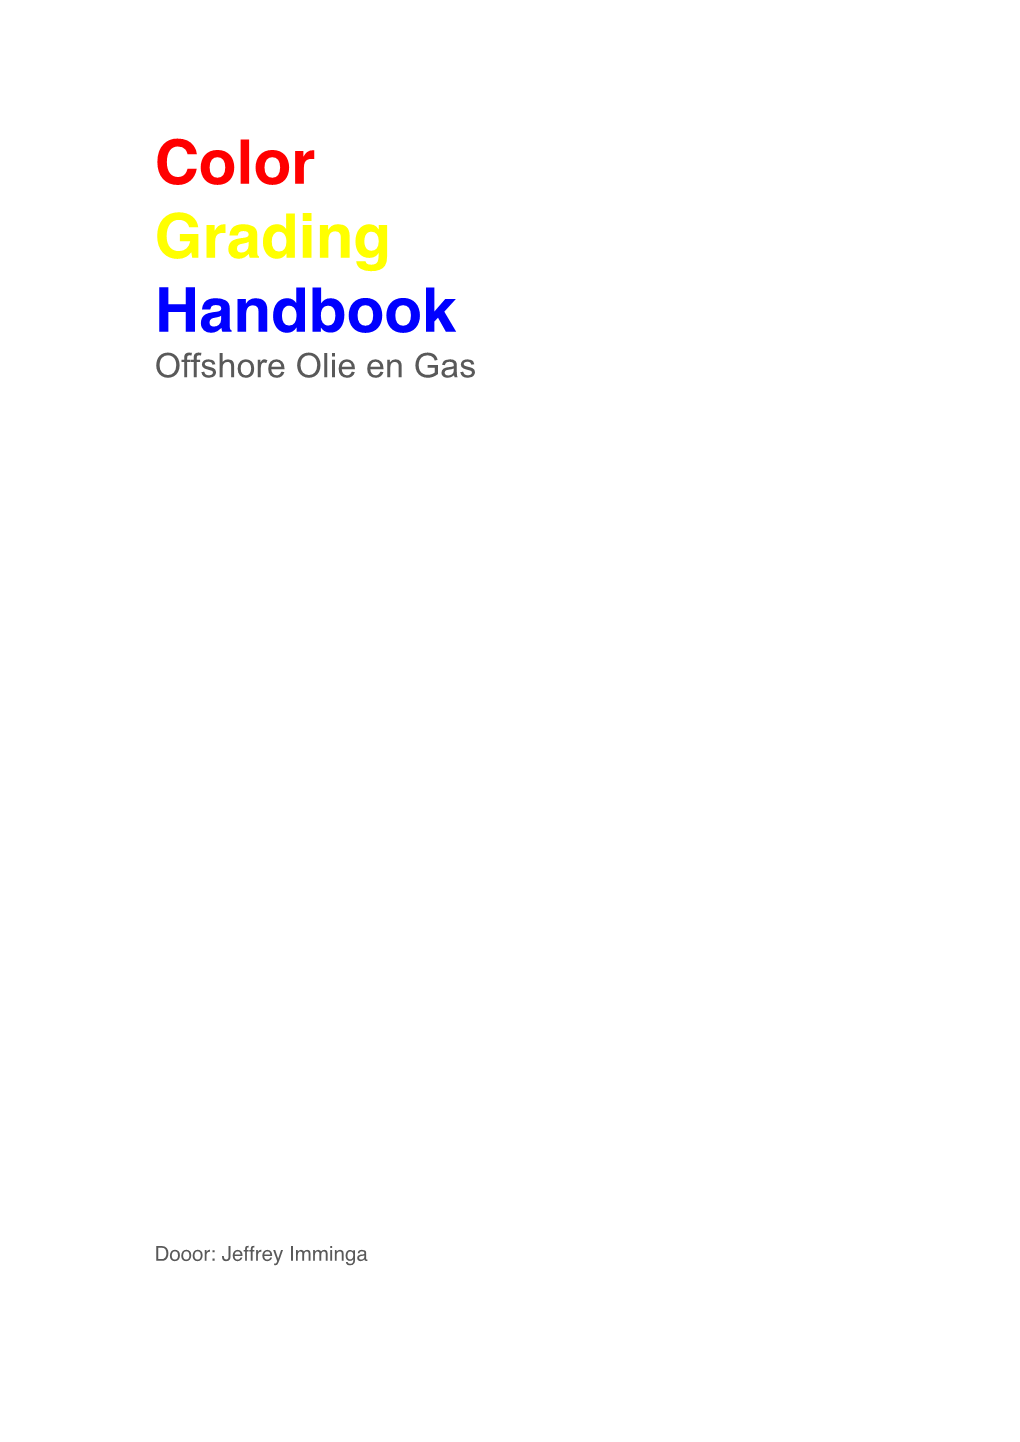 Color Grading Handbook Offshore Olie En Gas